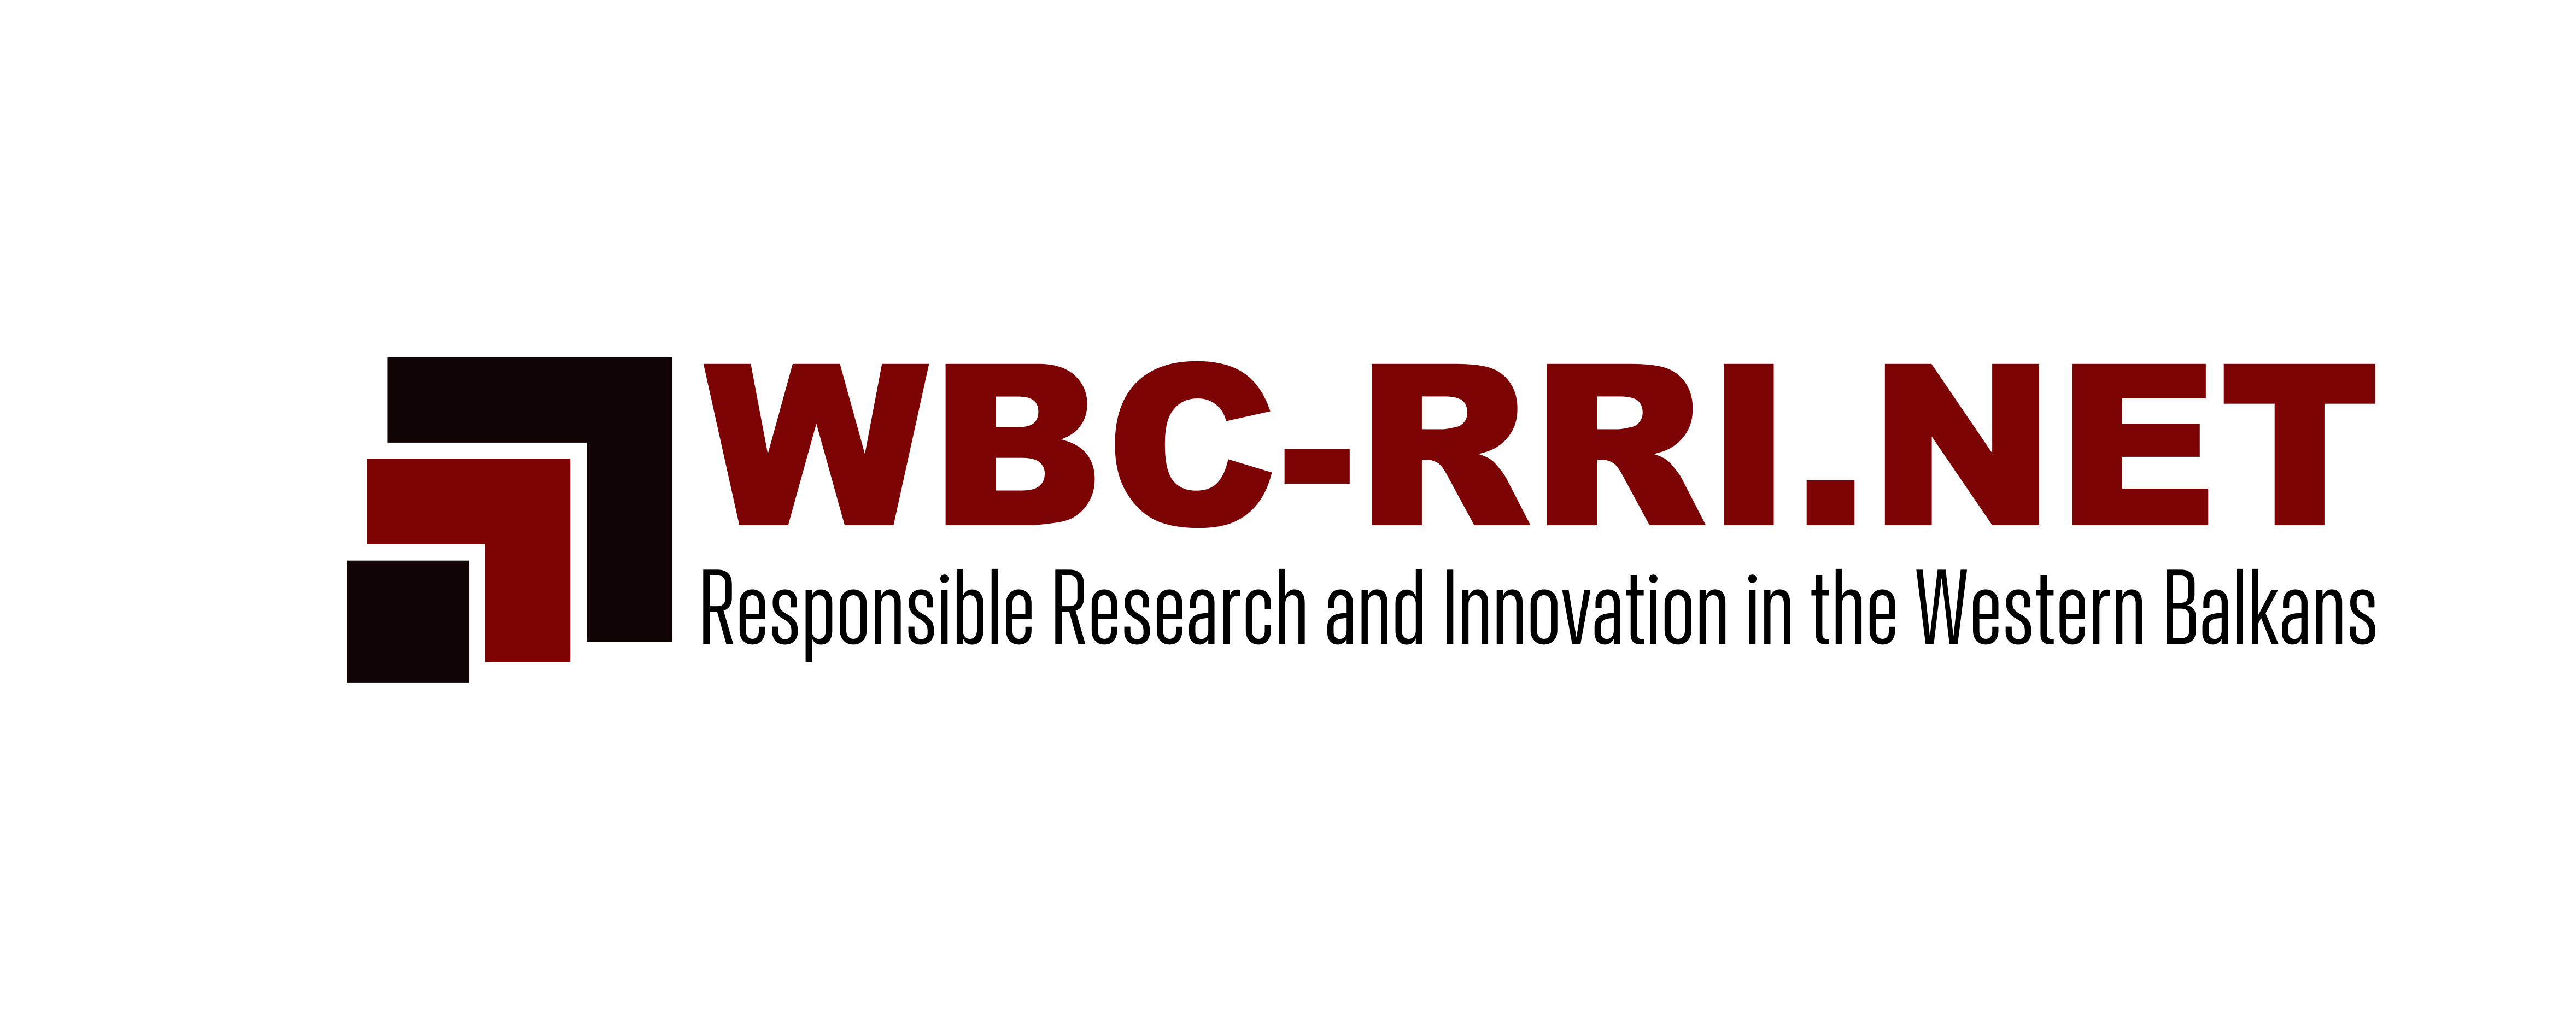 WBC-RRI.NET Webinar: Towards Diamond Open Access in Western Balkans